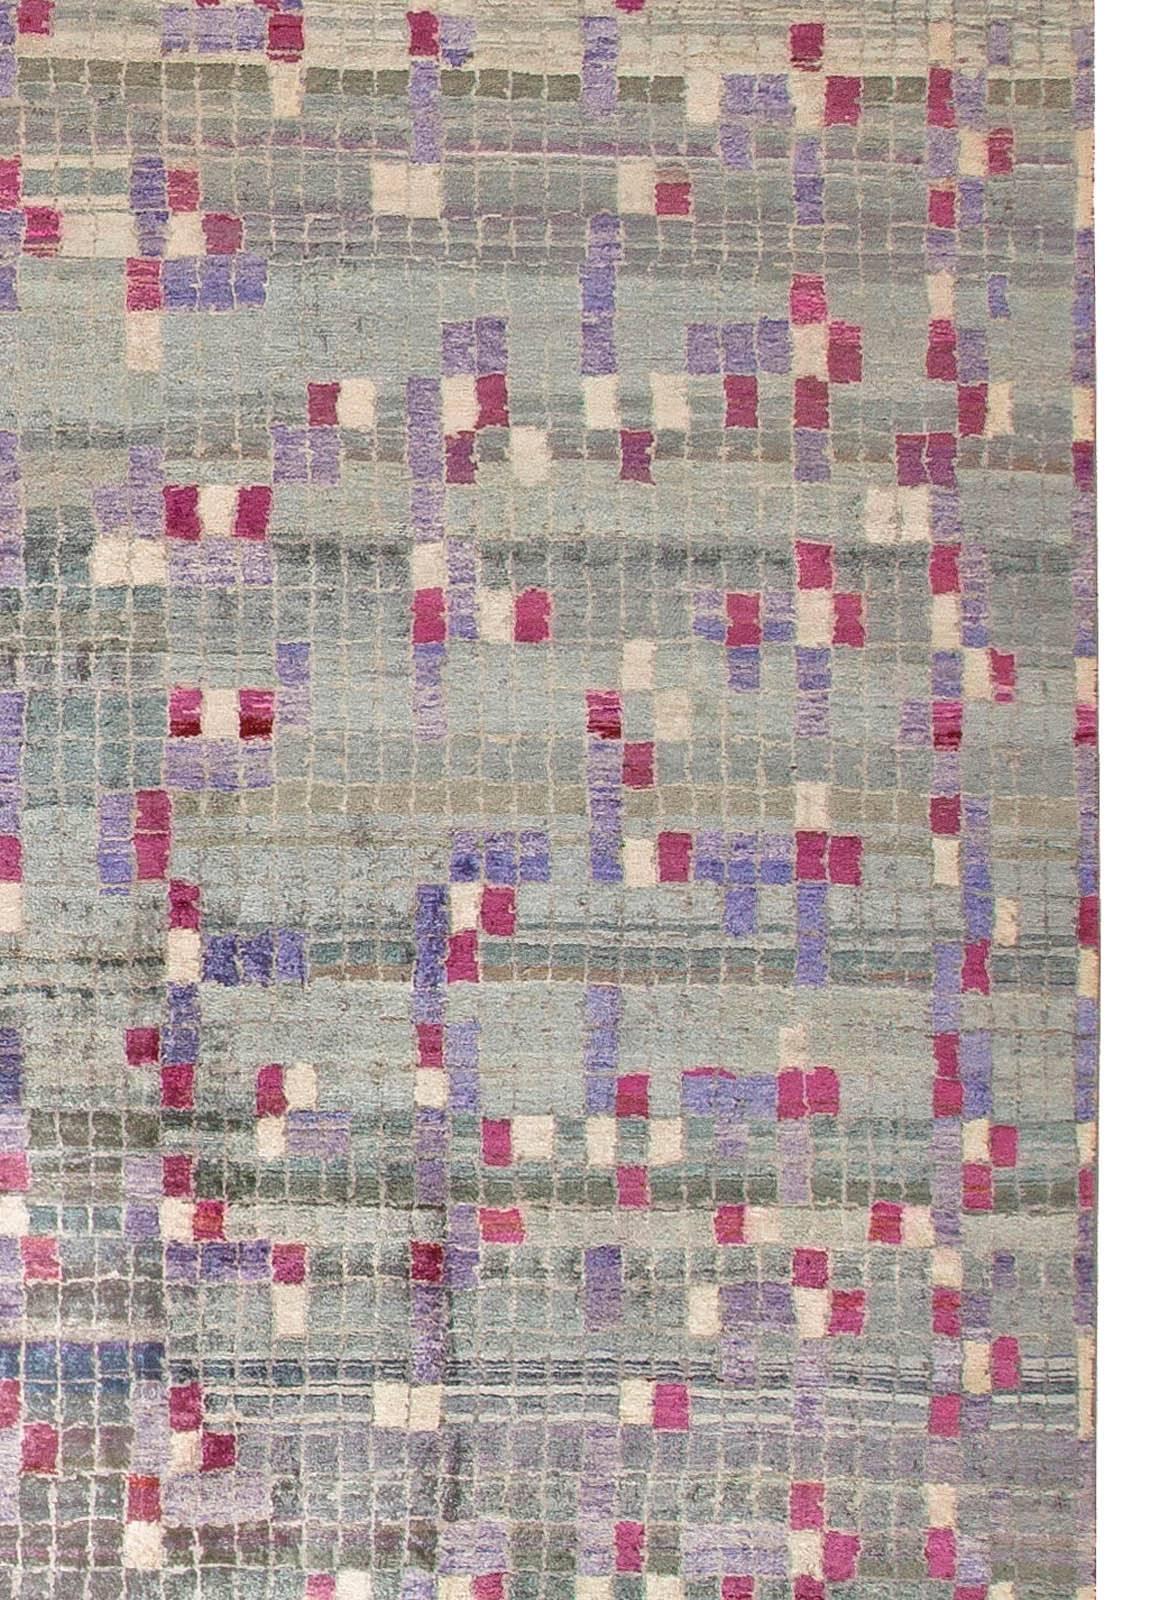 Modern geometric POOL tile handmade wool rug by by Doris Leslie Blau.
Size: 13'9